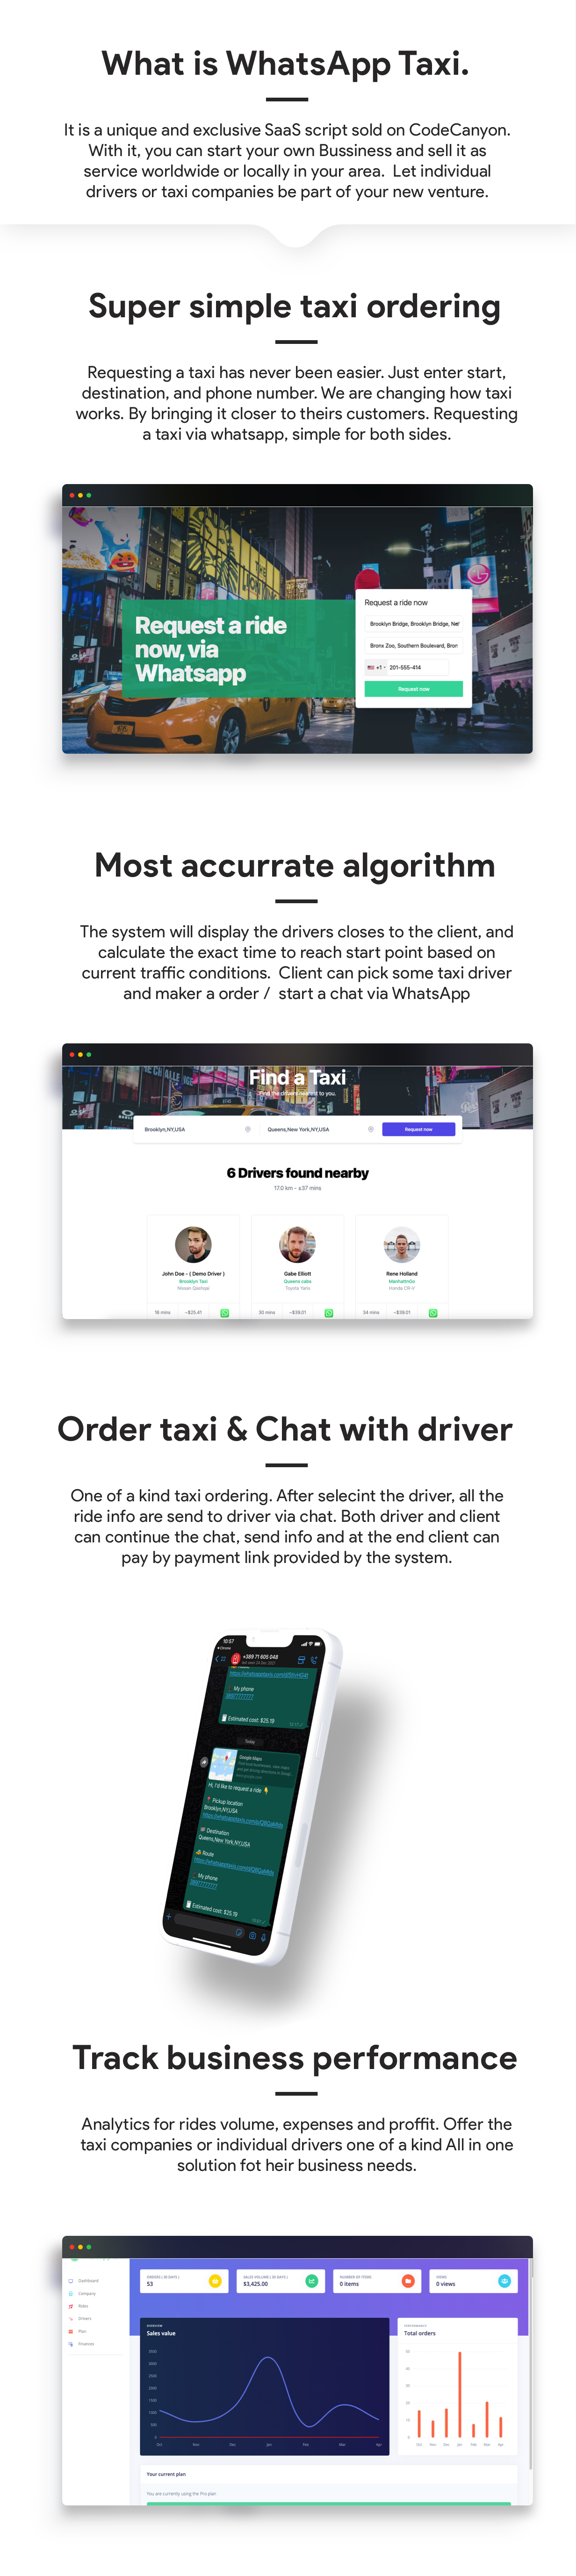 WhatsApp Taxi - SaaS  taxi ordering via WhatsApp - 6